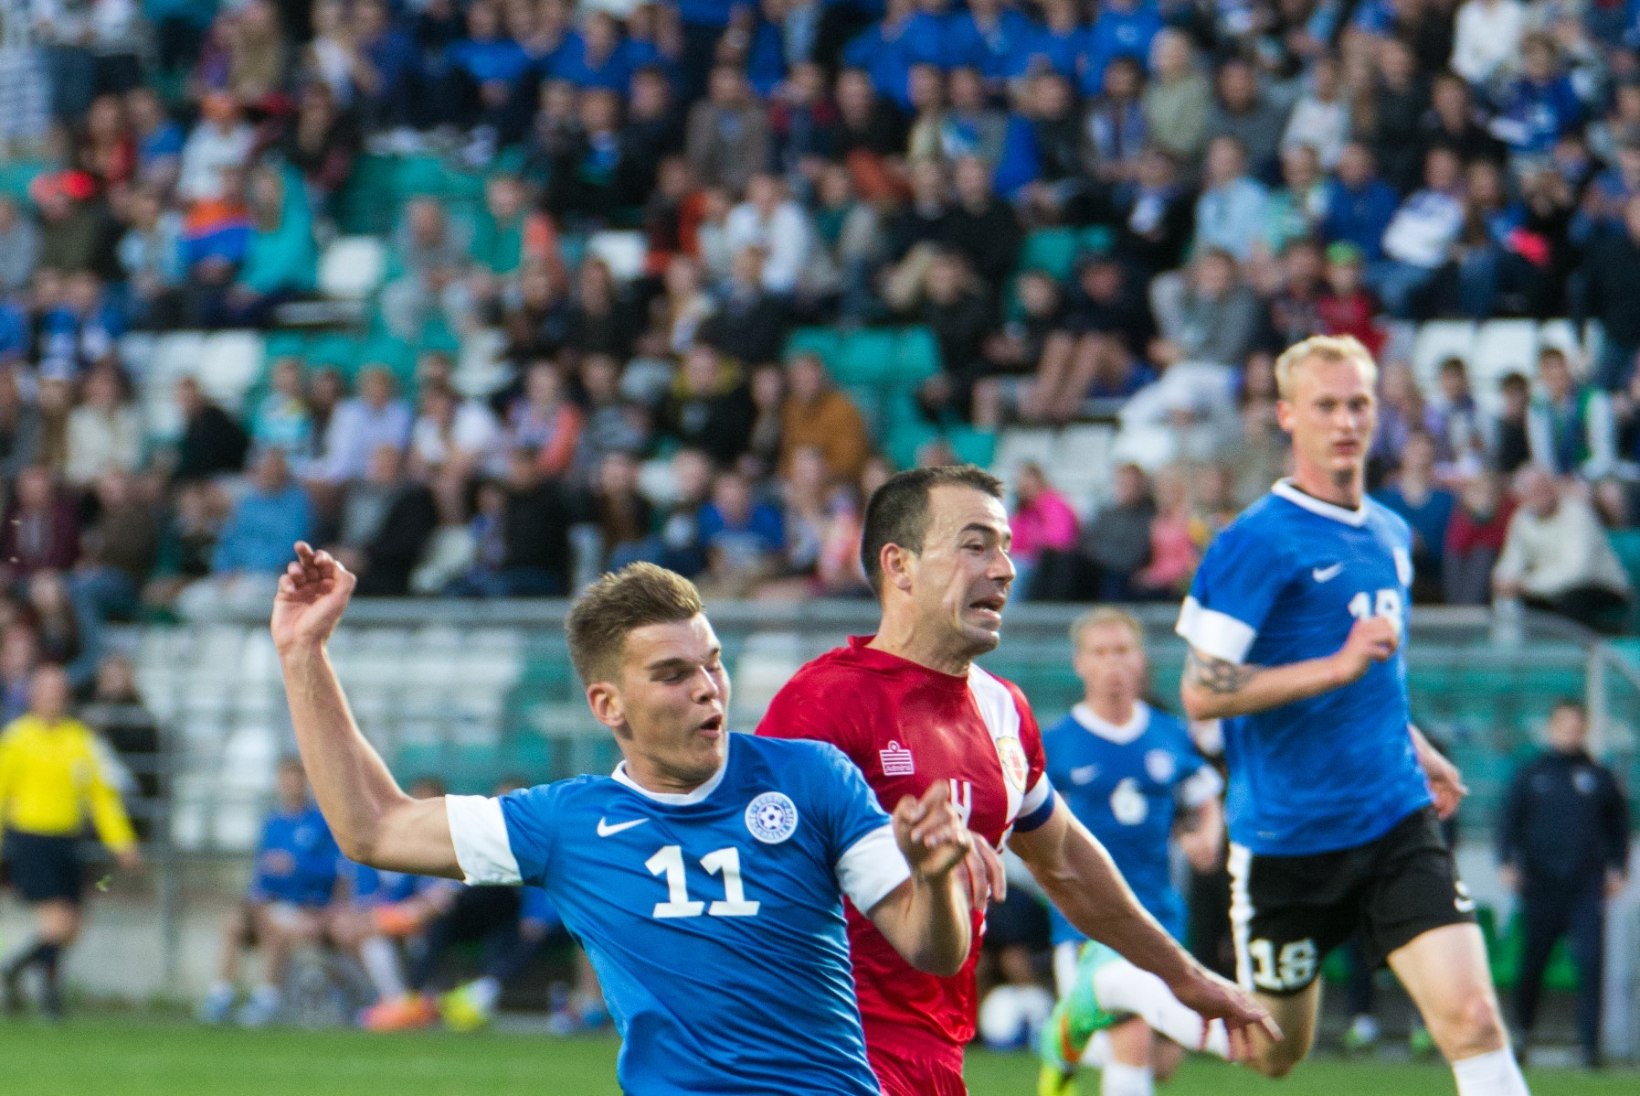 Jalgpallikoondis sõidab Islandile, Kink, Zenjov, Anier ja Puri audis